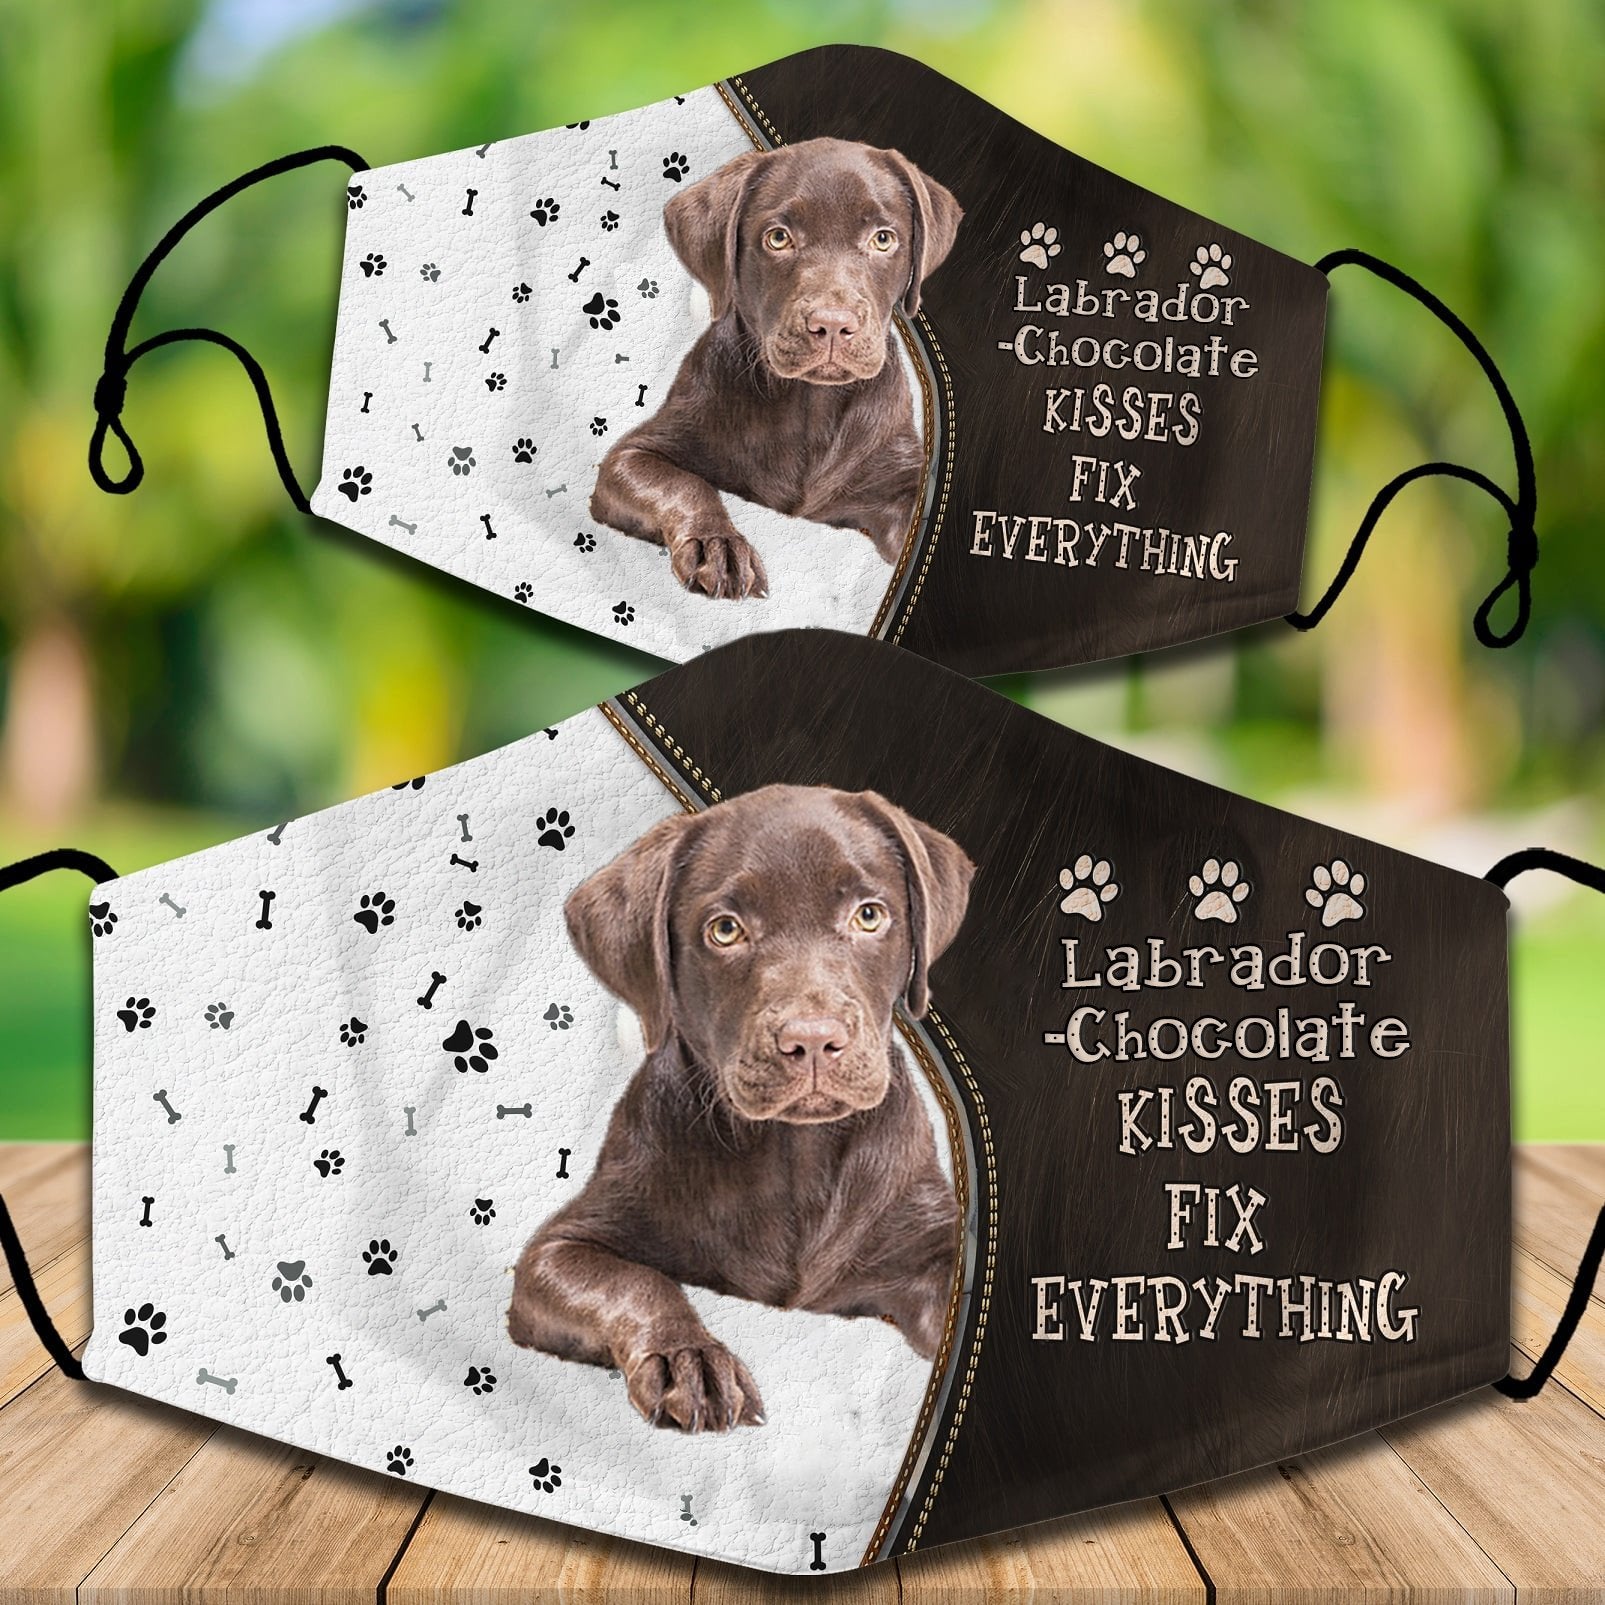 Labrador-Chocolate Kisses Fix Everything Veil